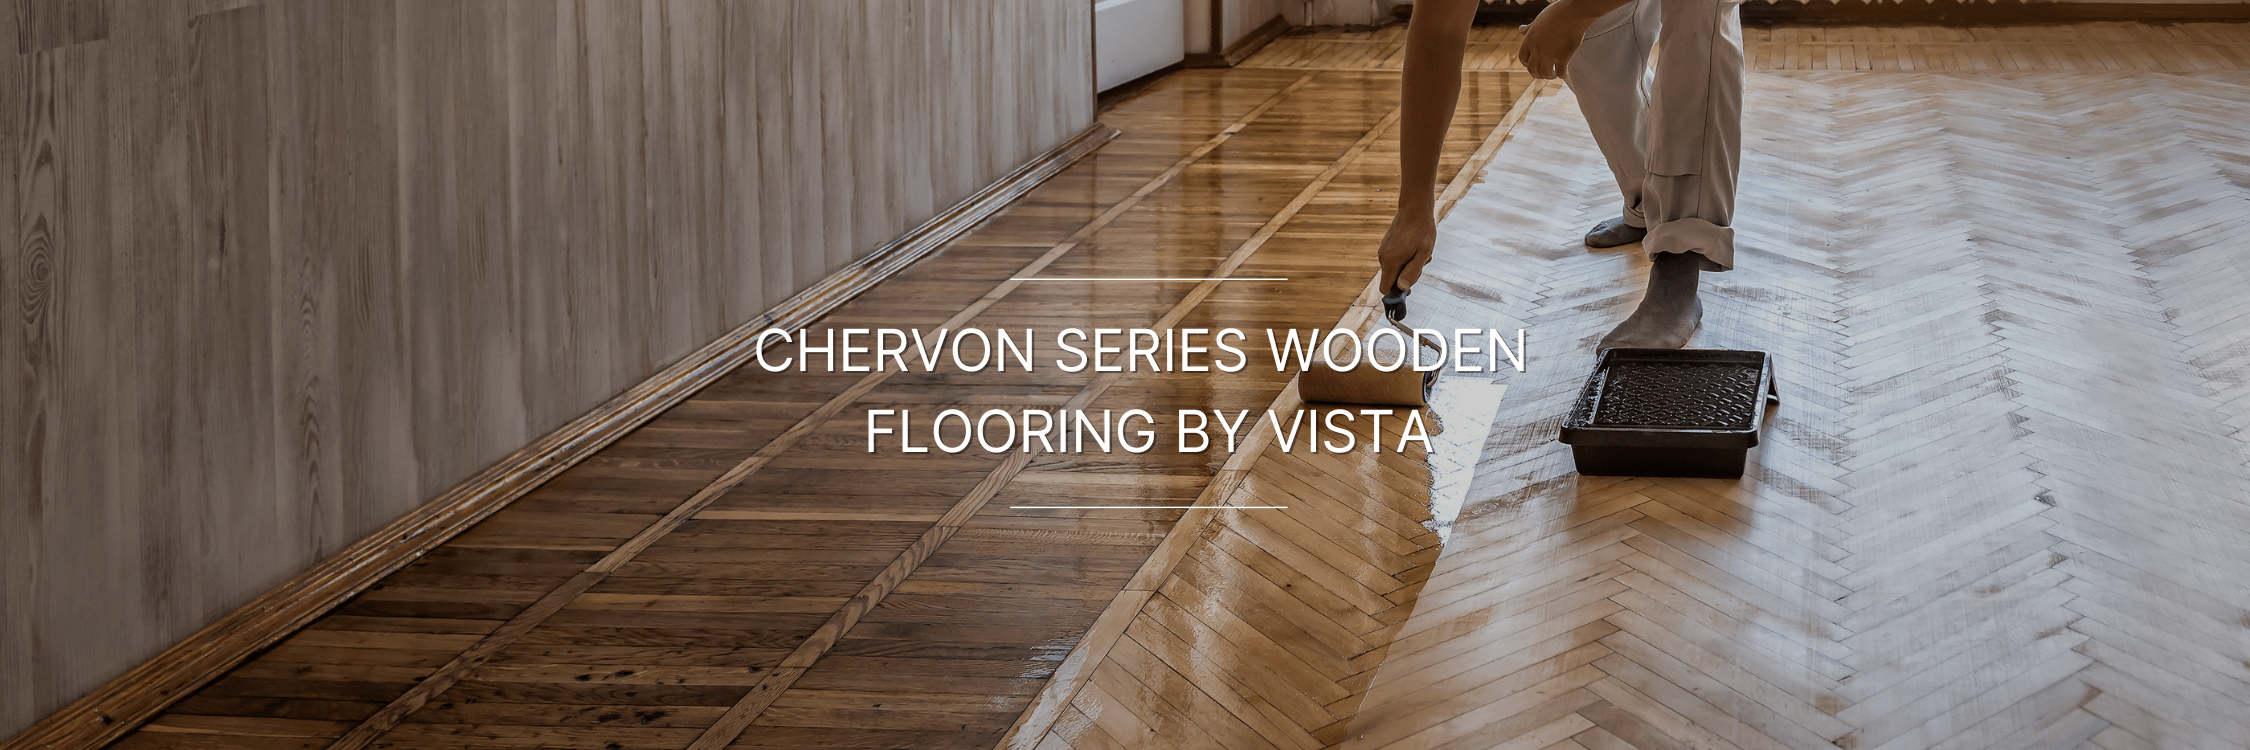 Chevron Series Wooden Flooring by Vista